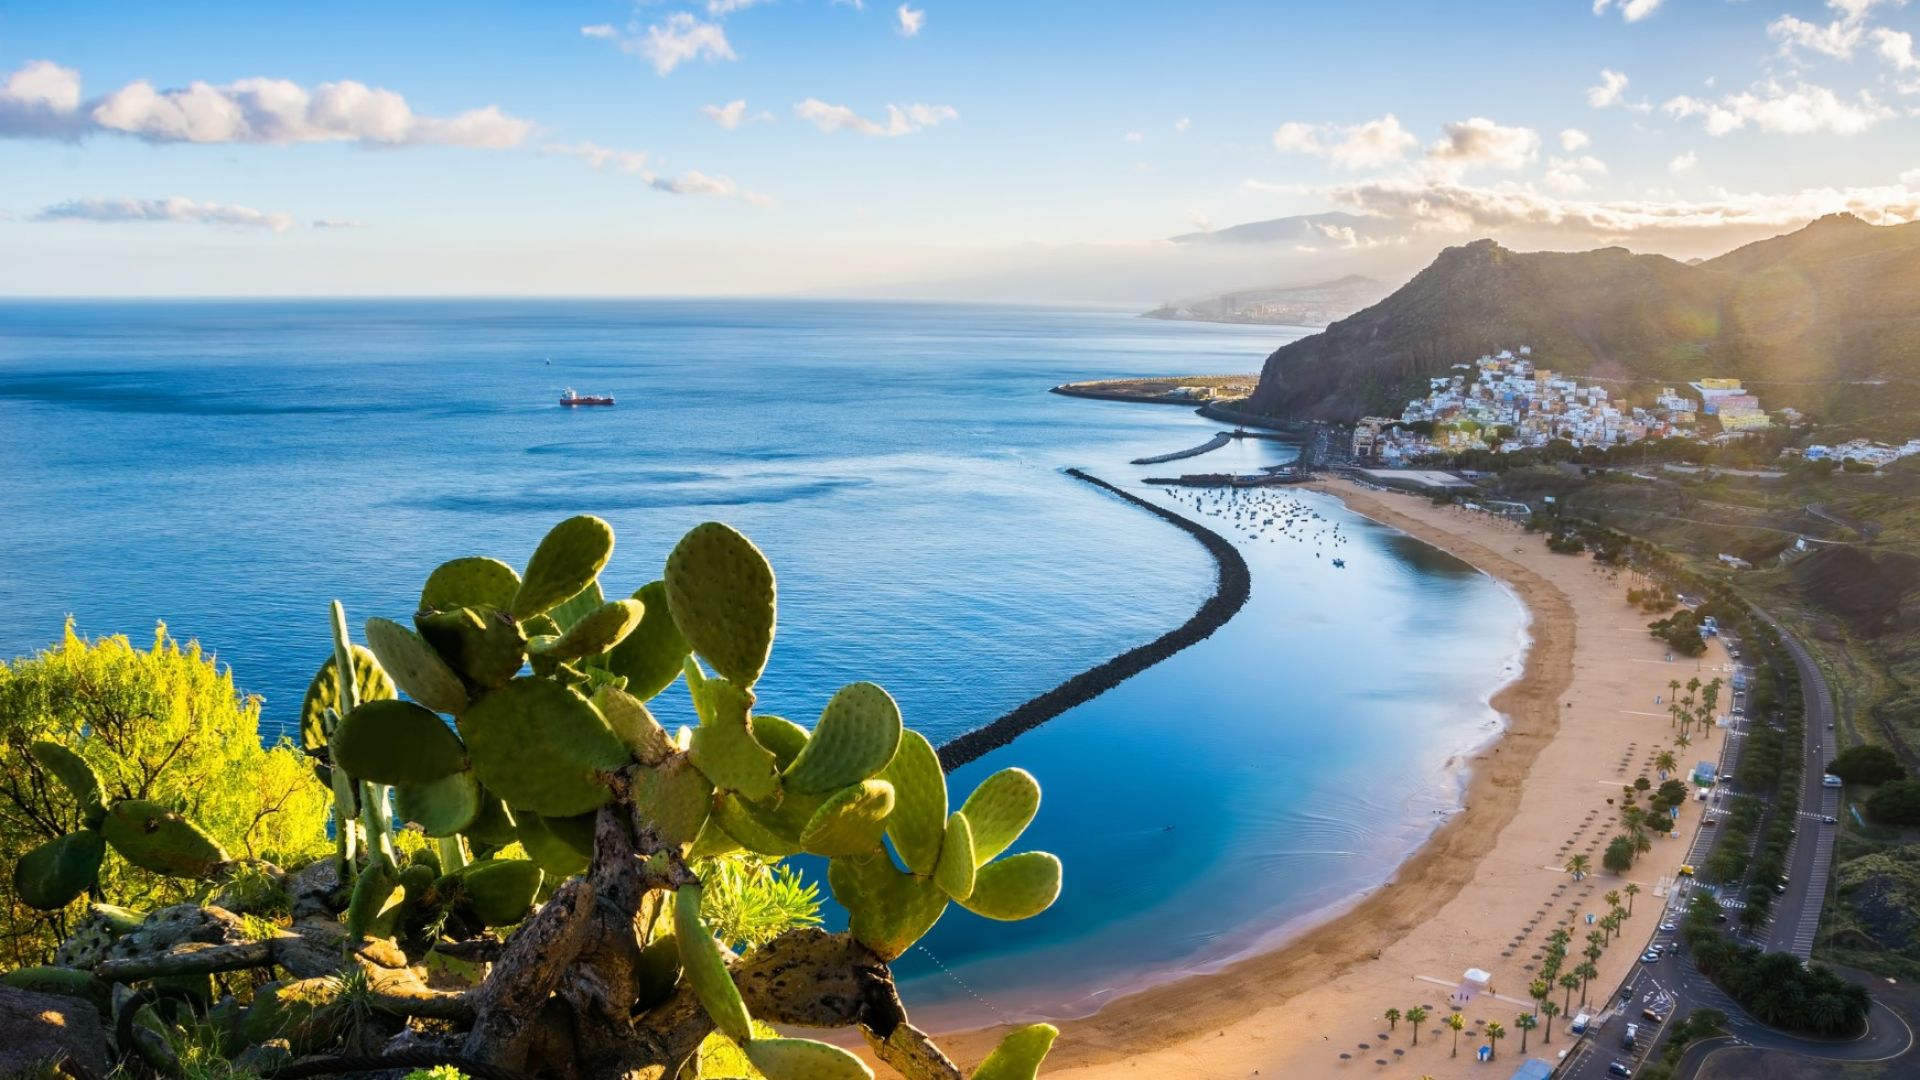 Канарски острови: Защо туризмът цъфти, а хората са недоволни